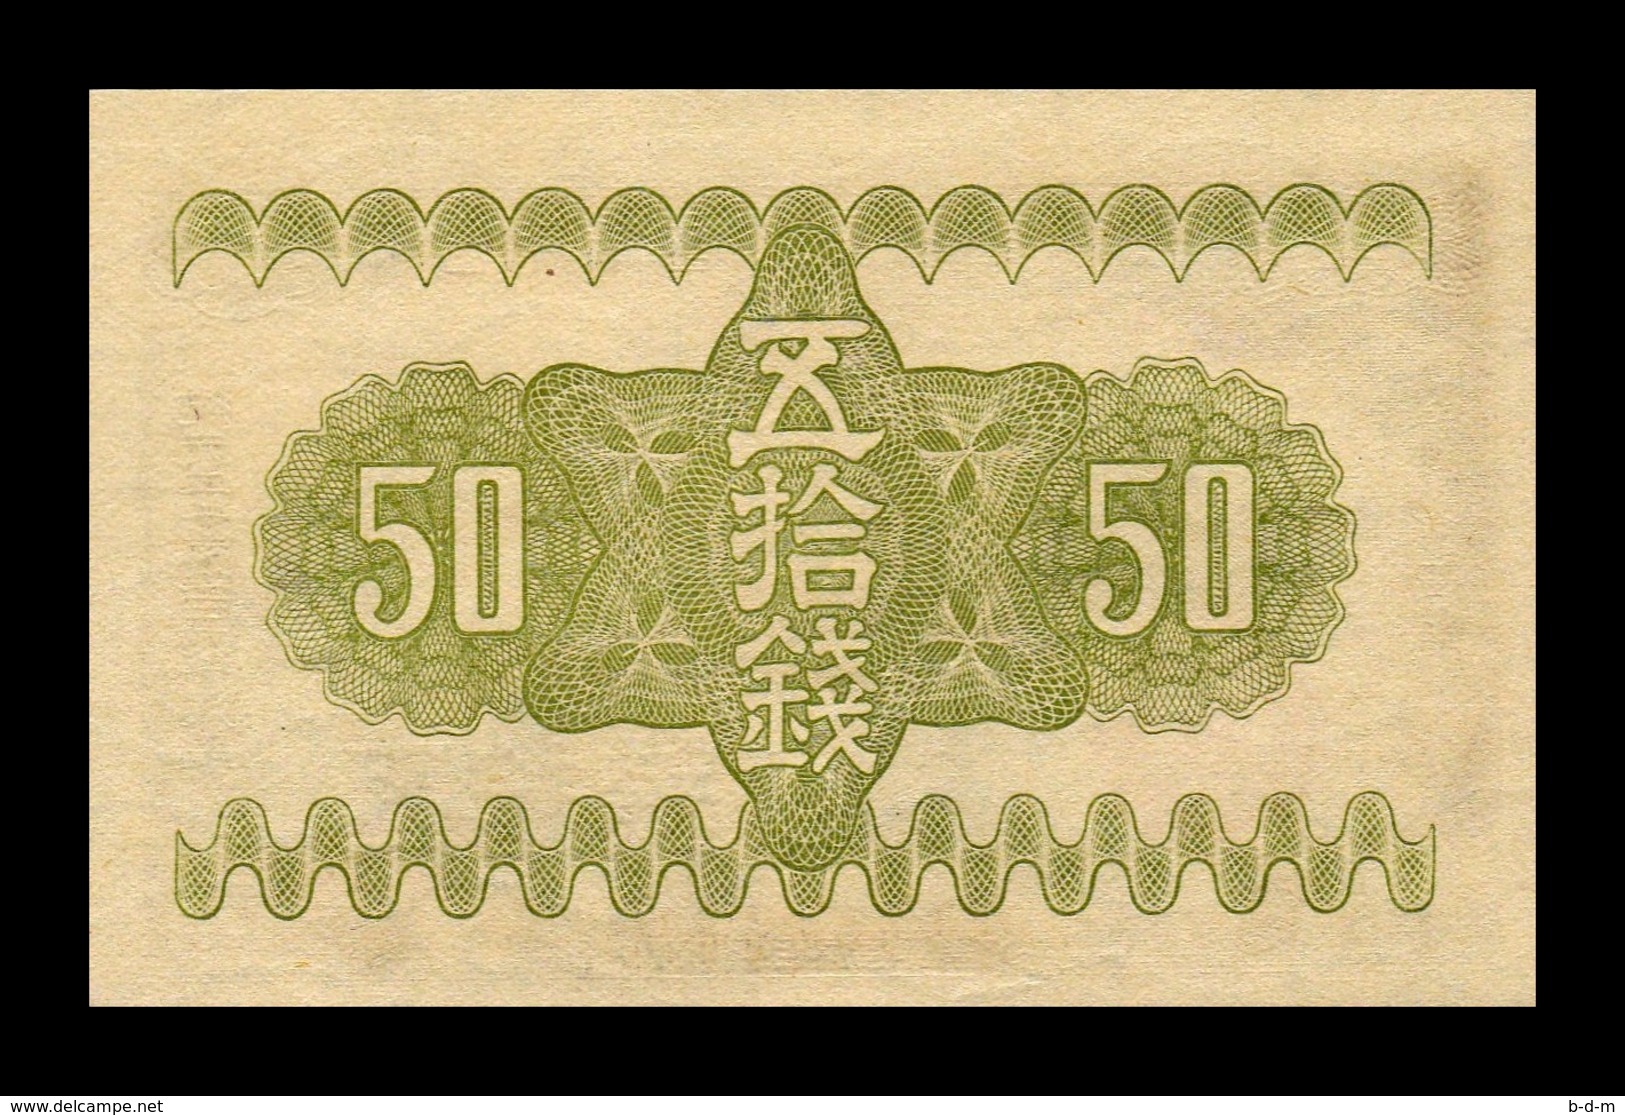 Japon Japan 50 Sen 1938 Pick 58 SC UNC - Japón